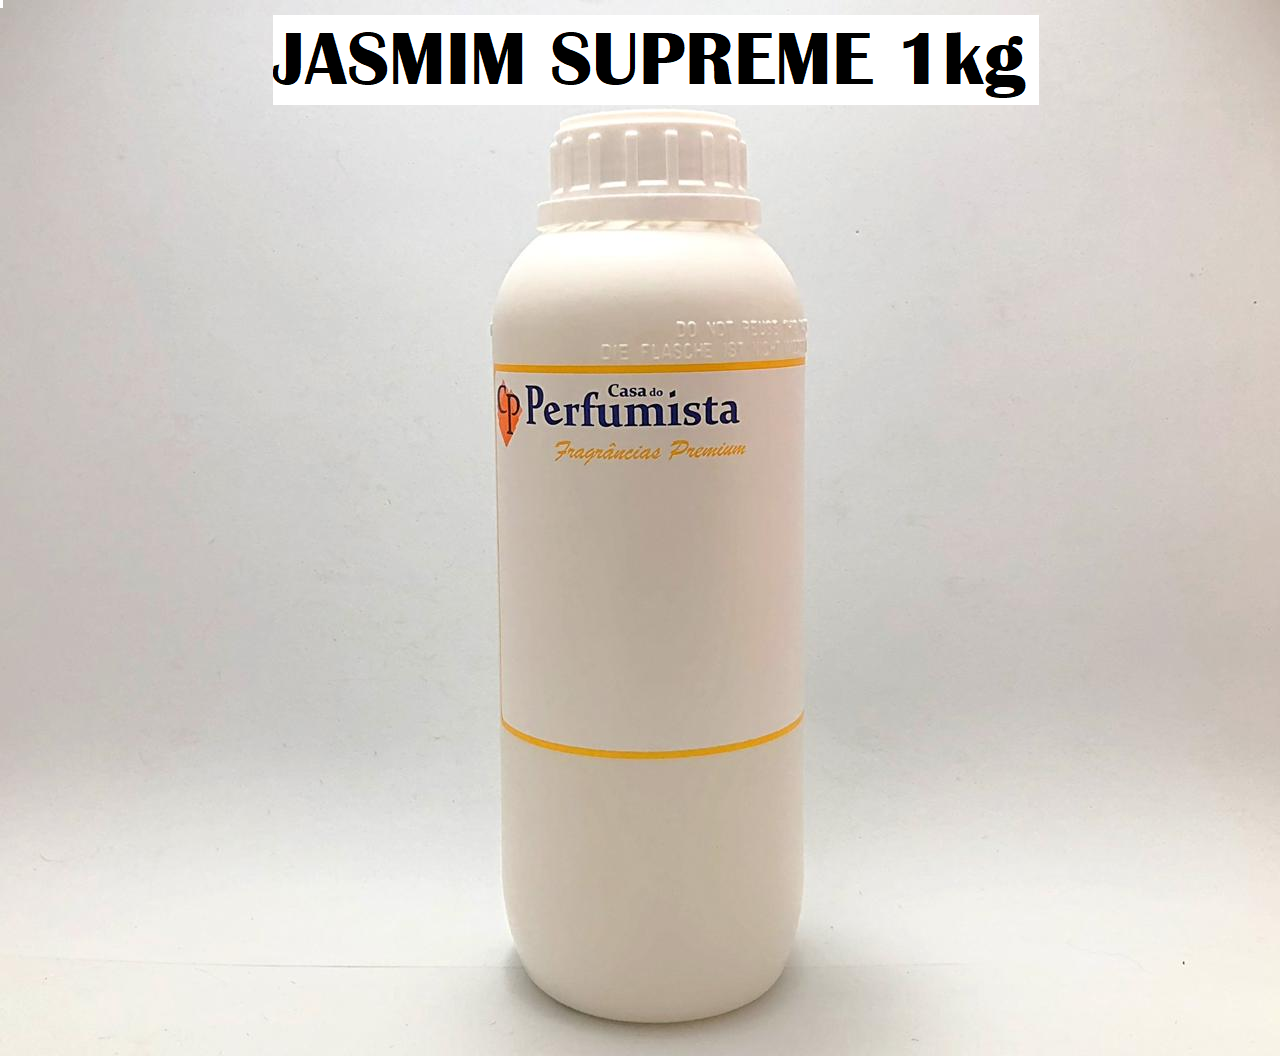 JASMIM SUPREME - 1kg